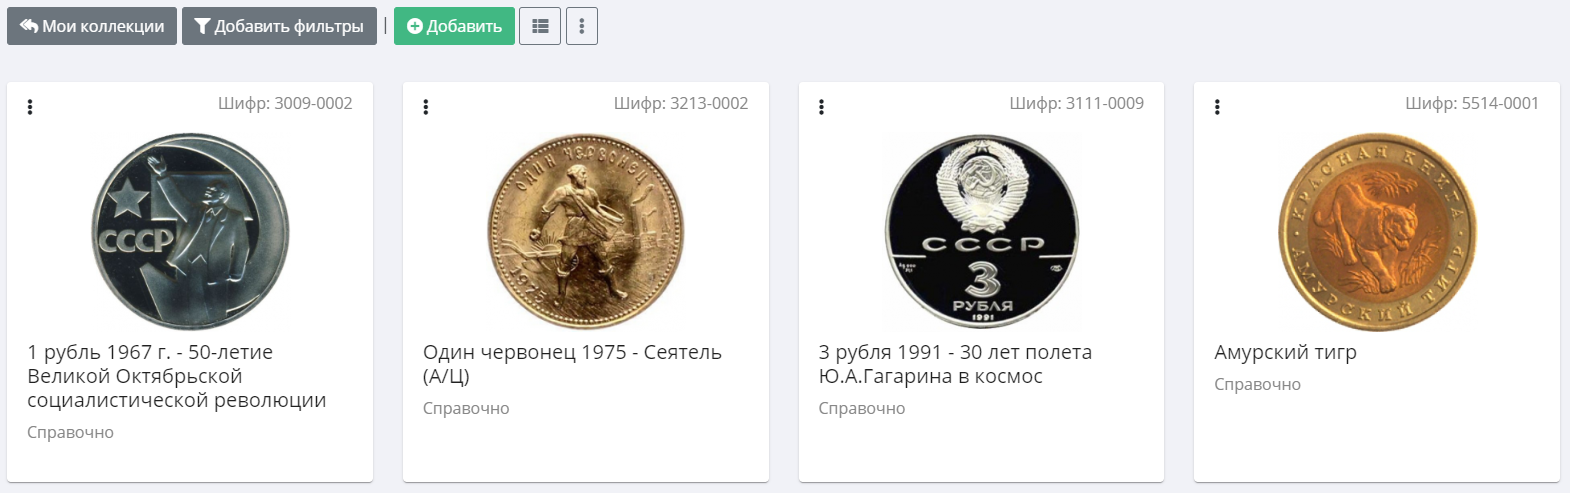 Монеты в личном кабинете коллекционера | Hobby Keeper Articles